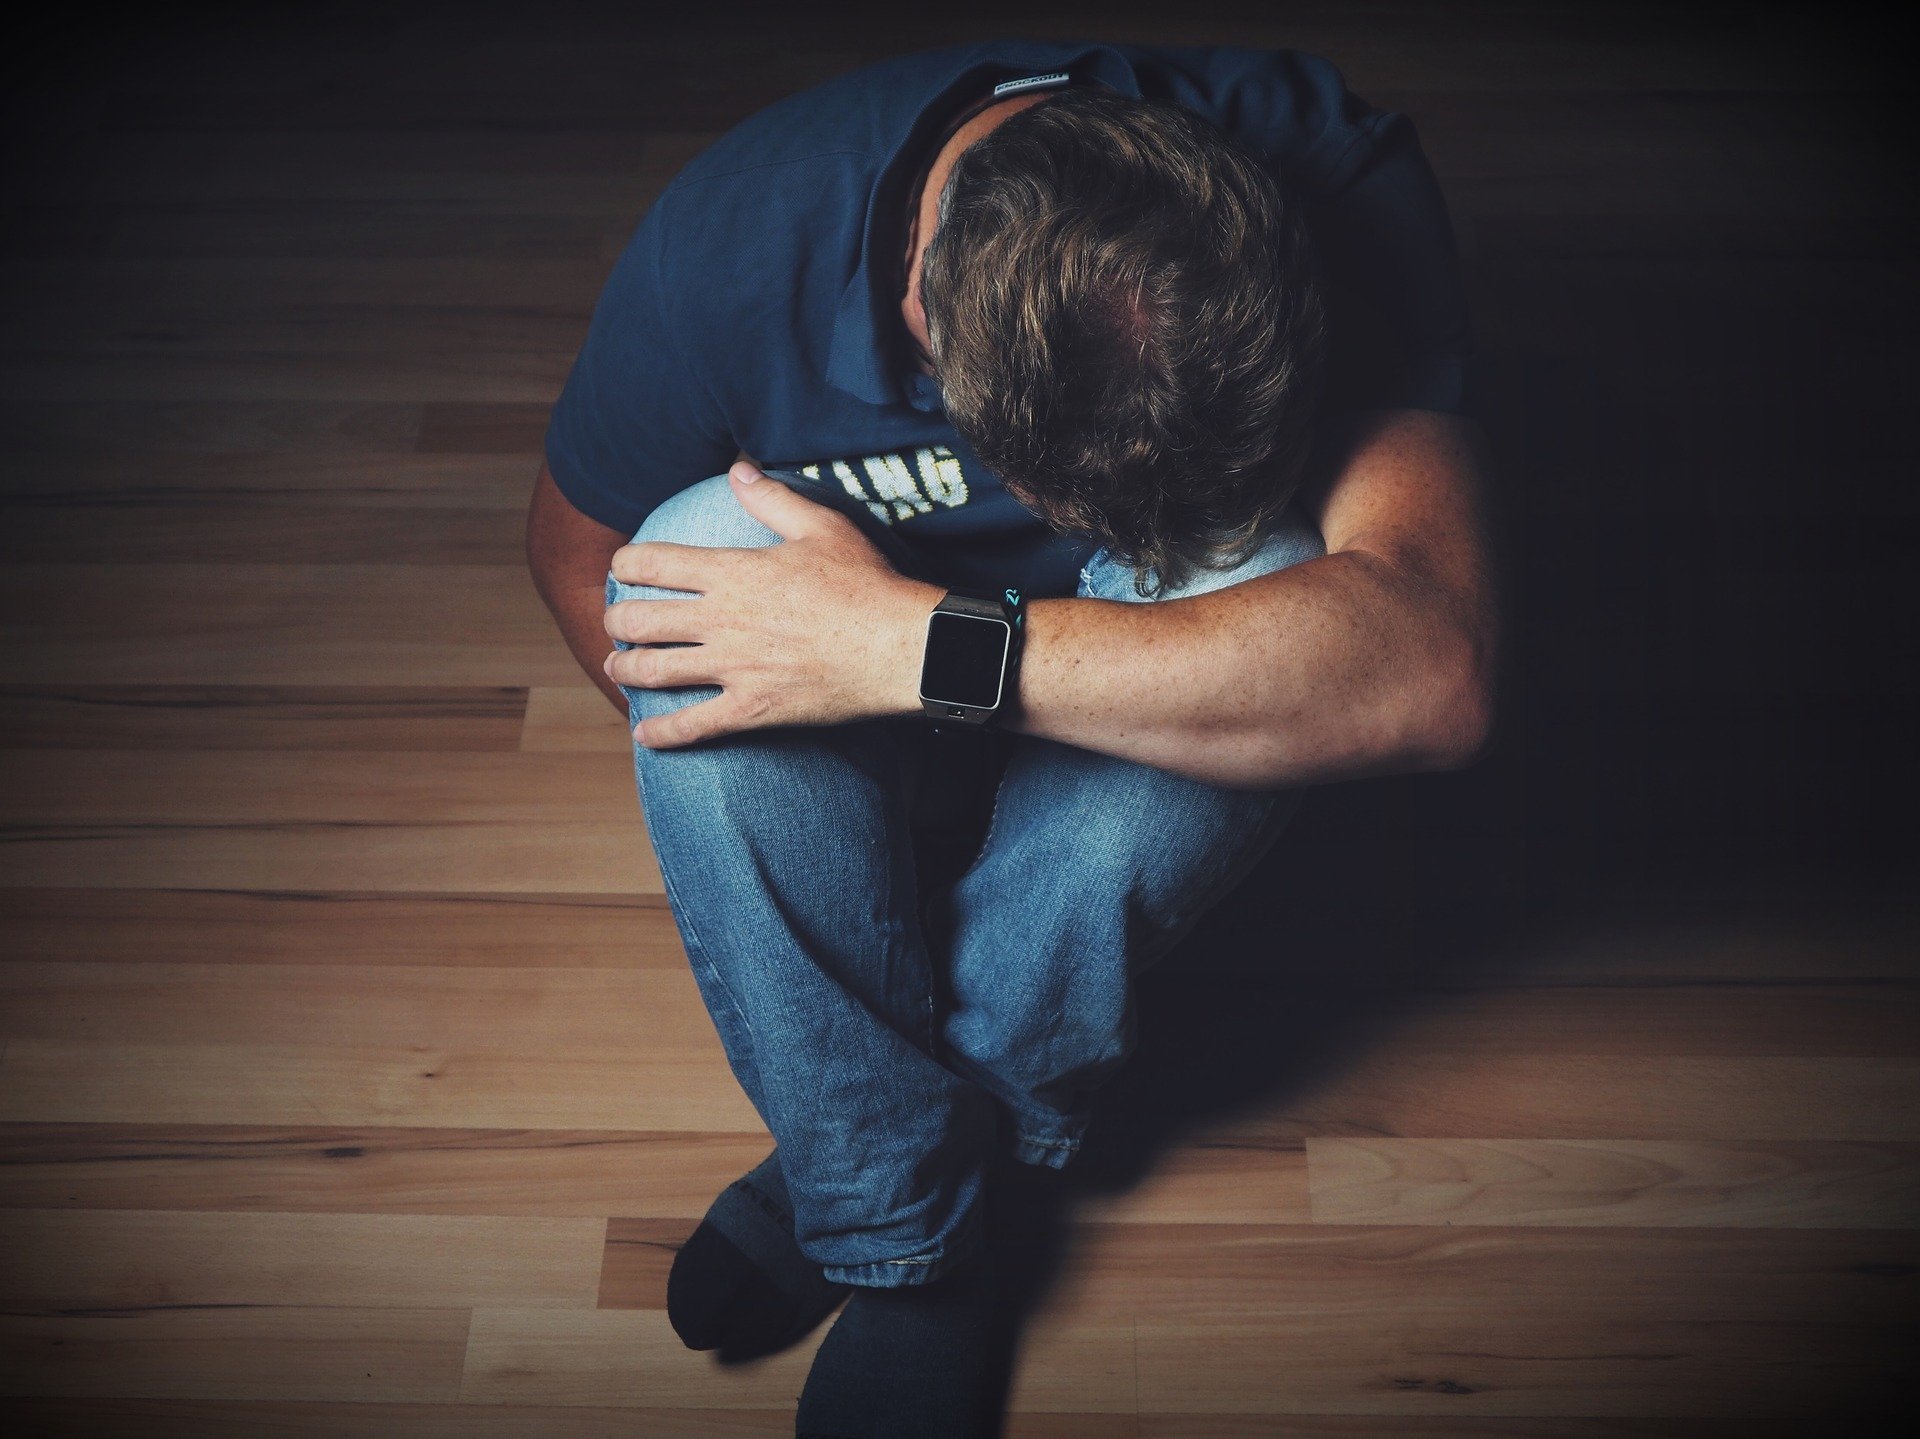 La inestabilidad emocional aflora rasgos depresivos en jvenes y adolescentes